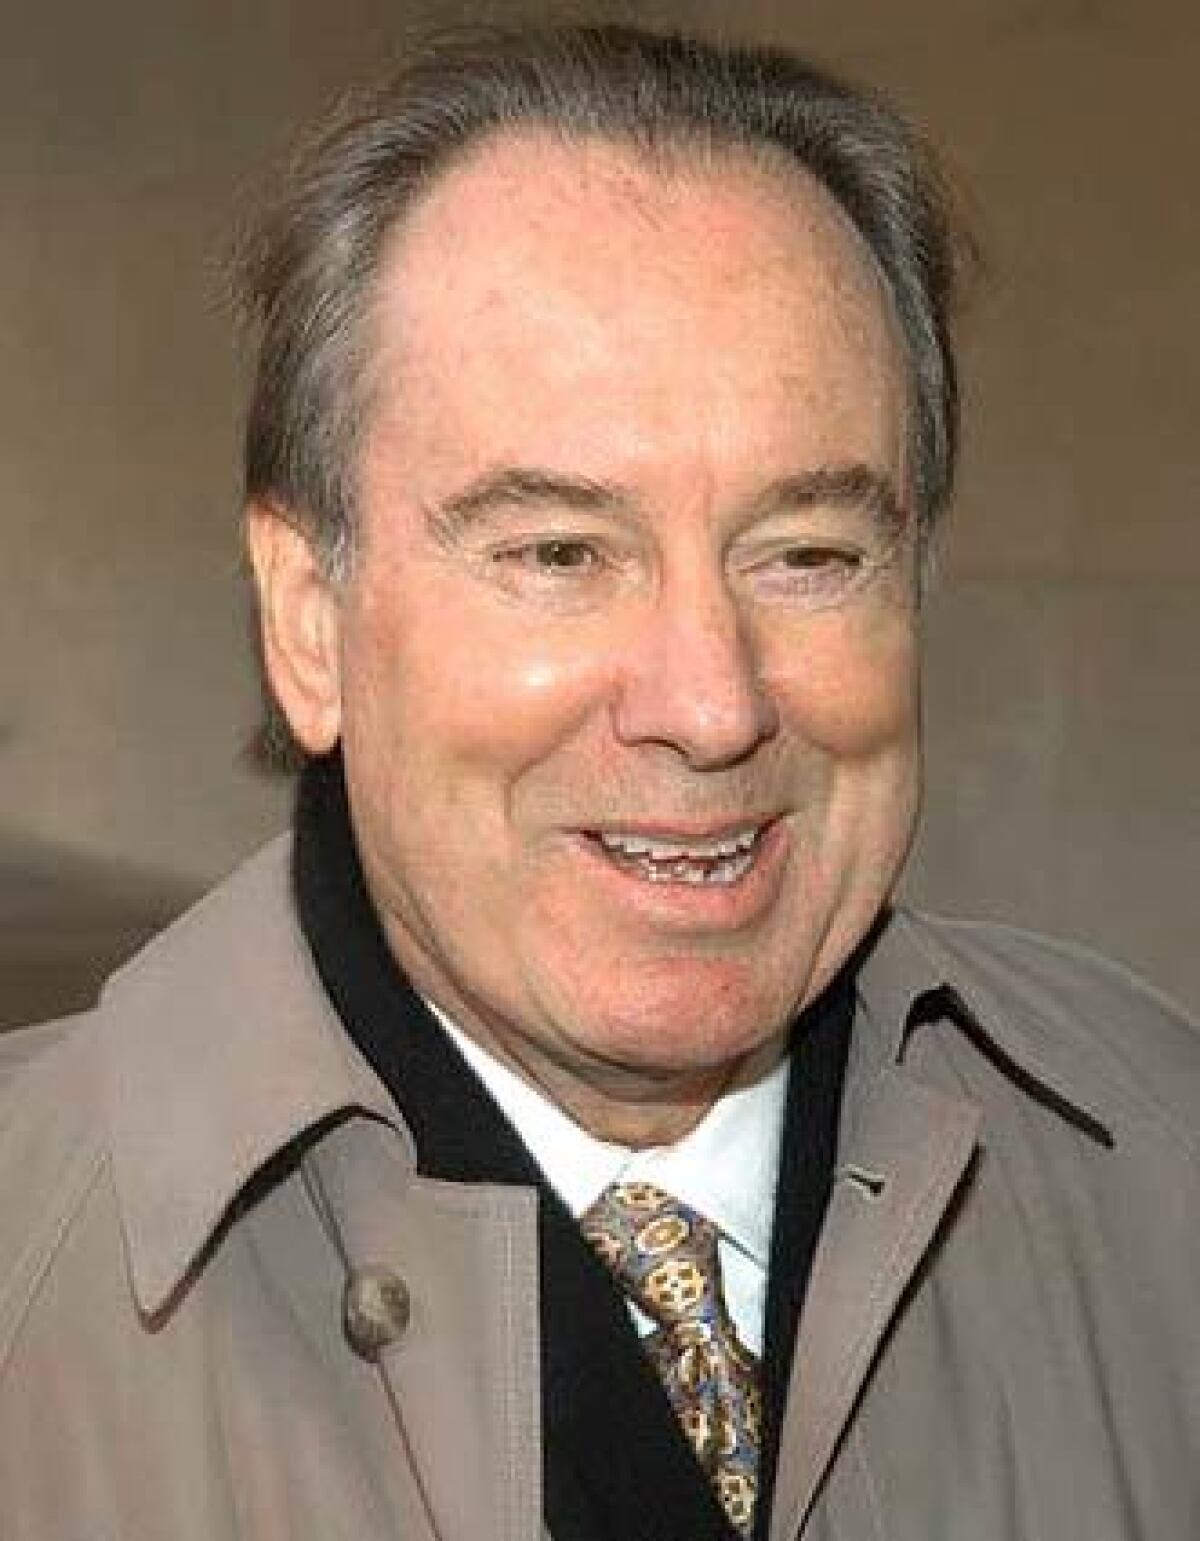 Attorney Terry Christensen in 2003